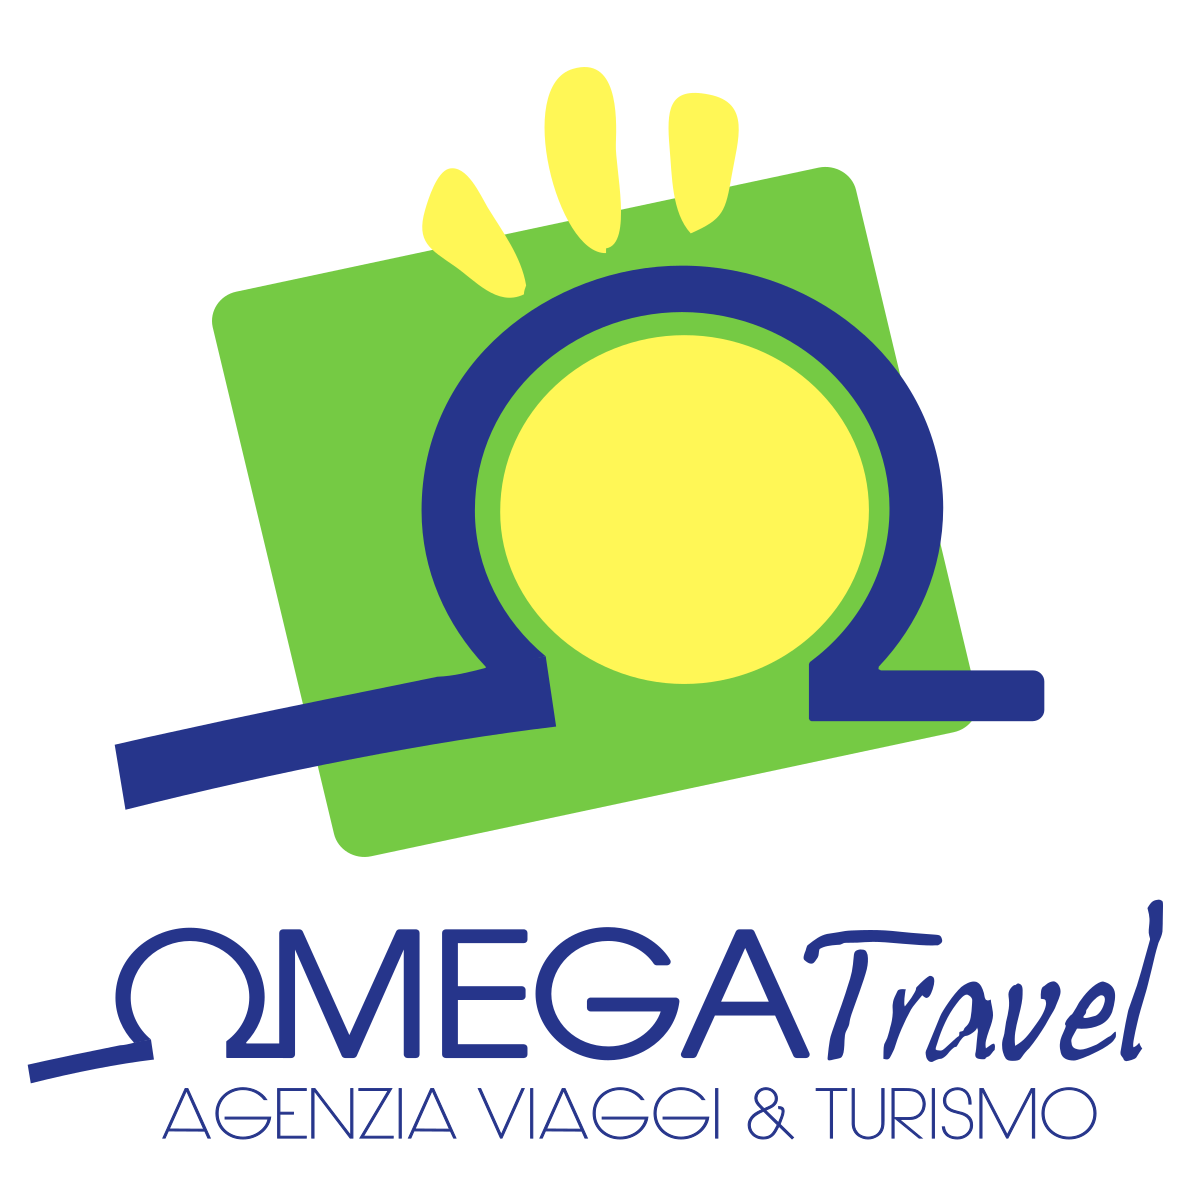 omega travel molise